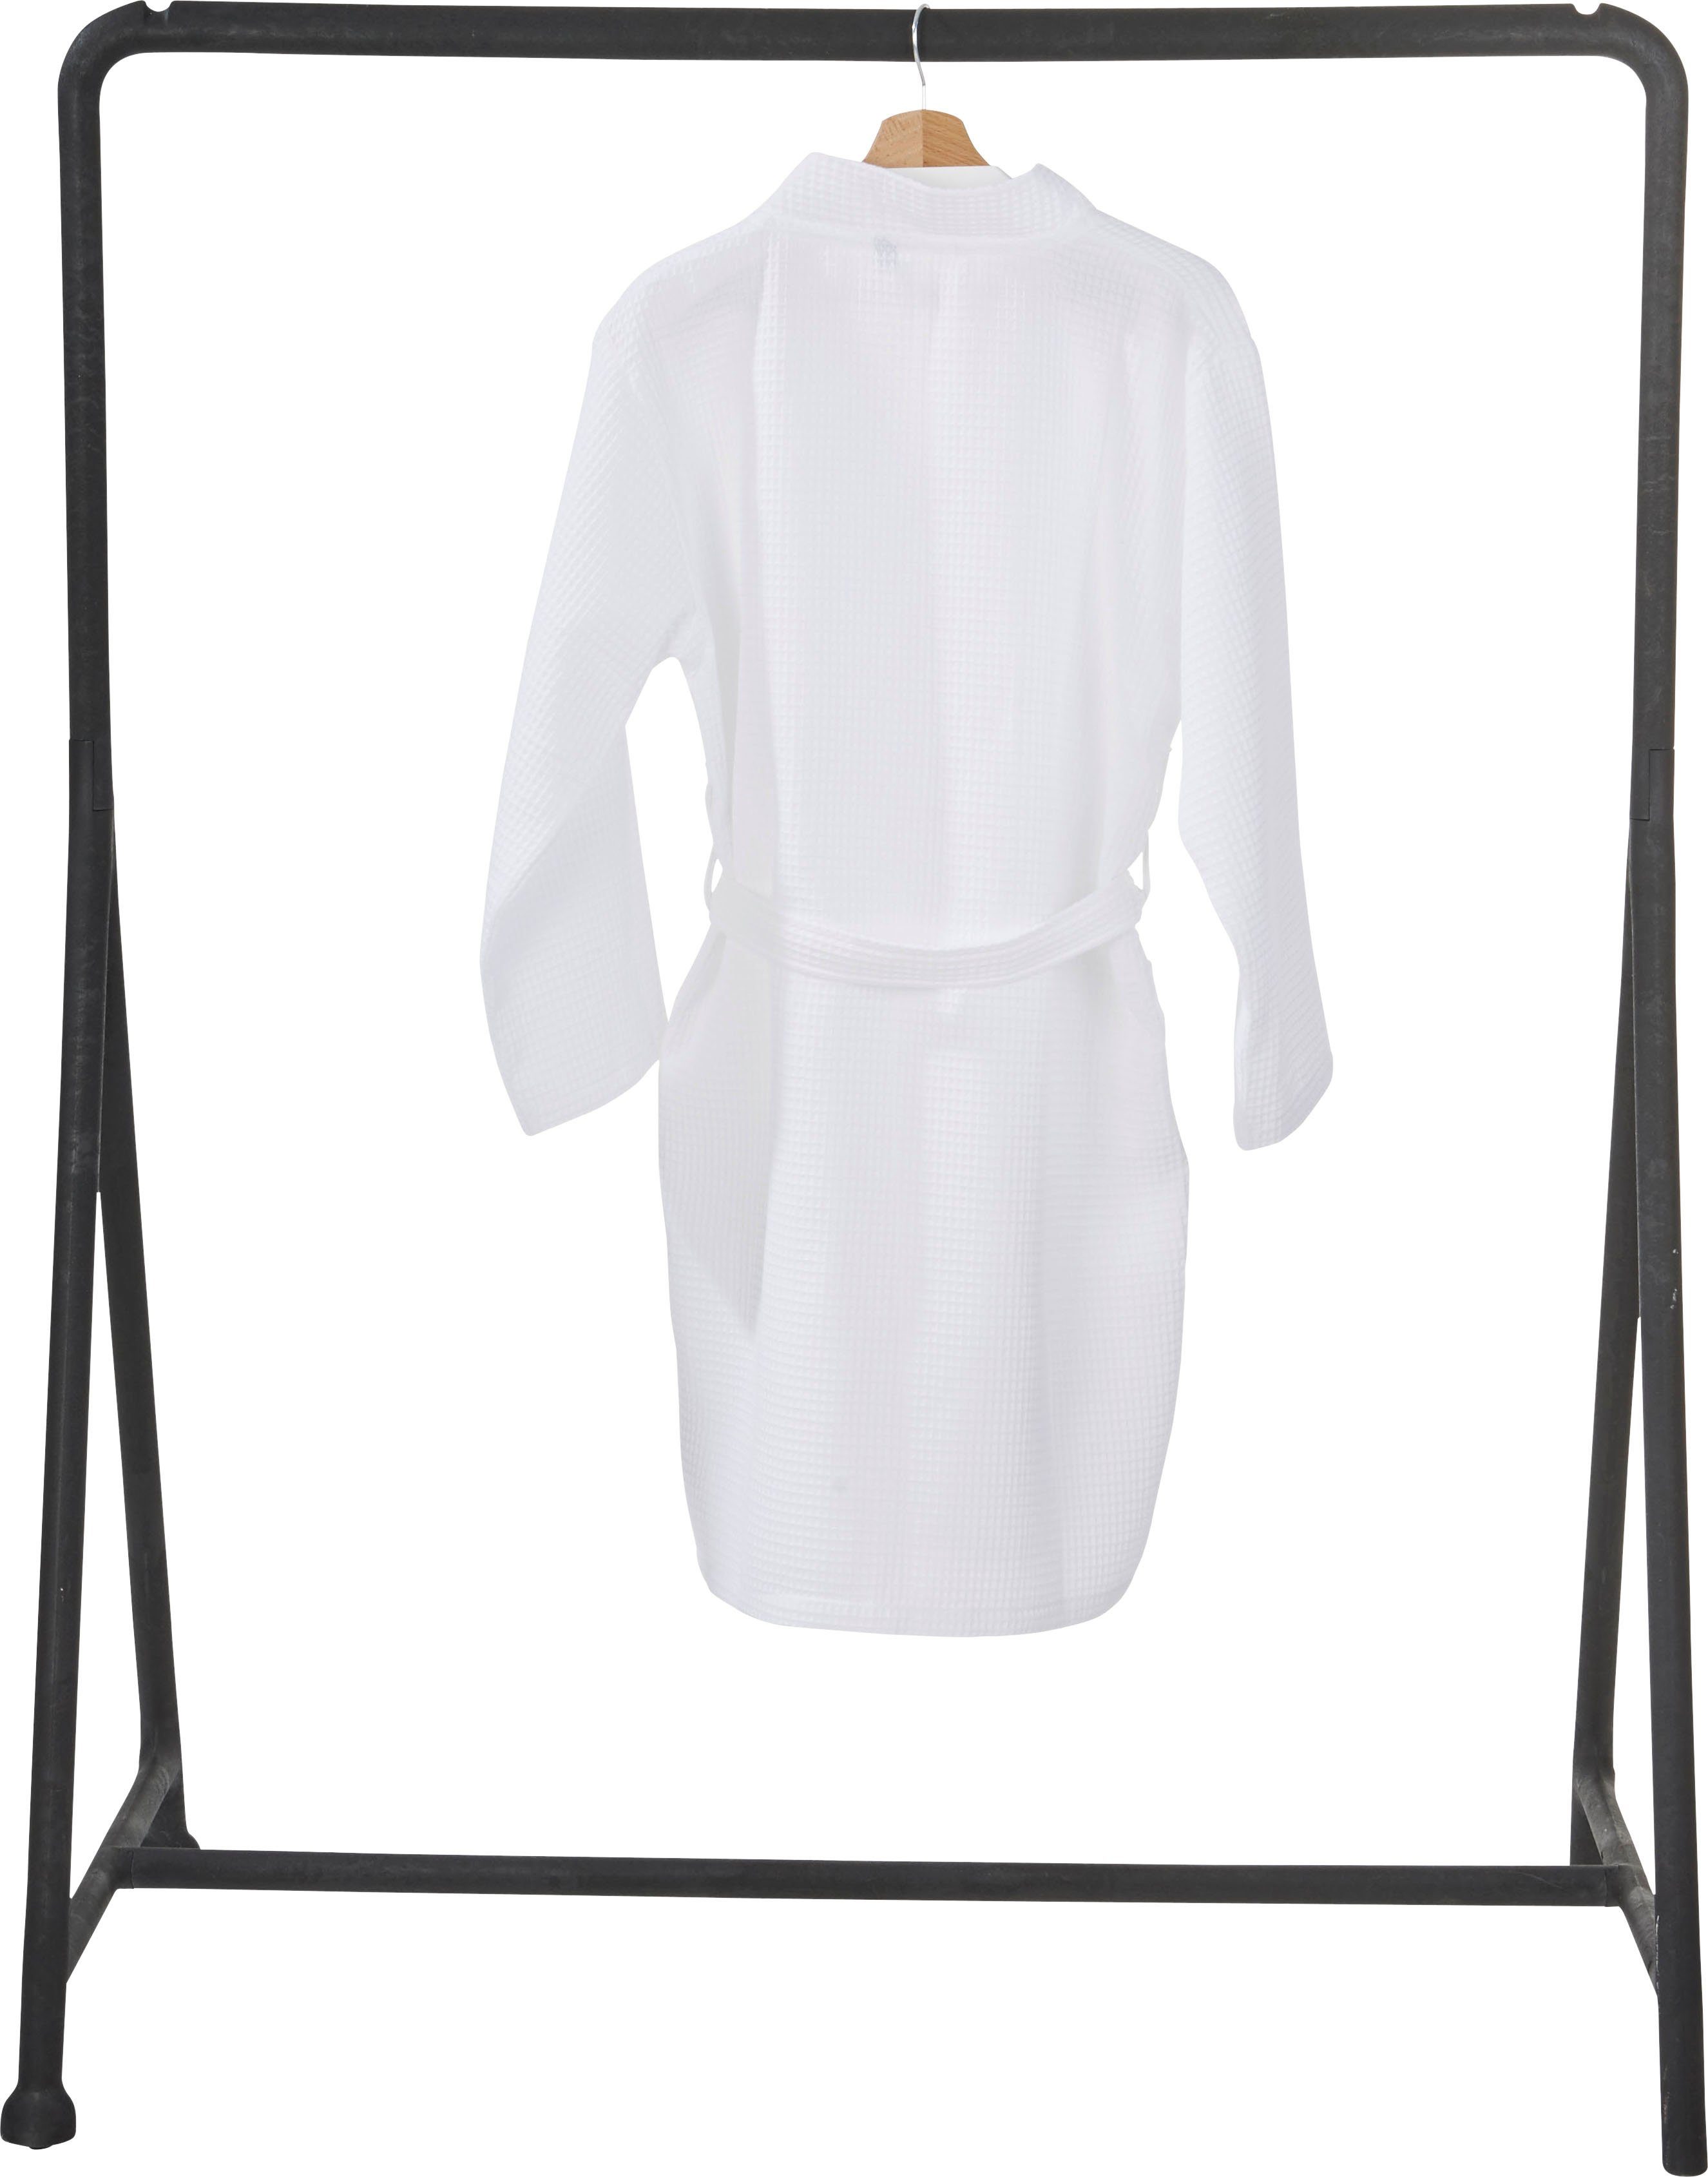 Taschen aufgesetzten mit Kurzform, MySense, Waffelpiqué-Struktur, Piqué, done.® weiß und Damenbademantel Schalkragen